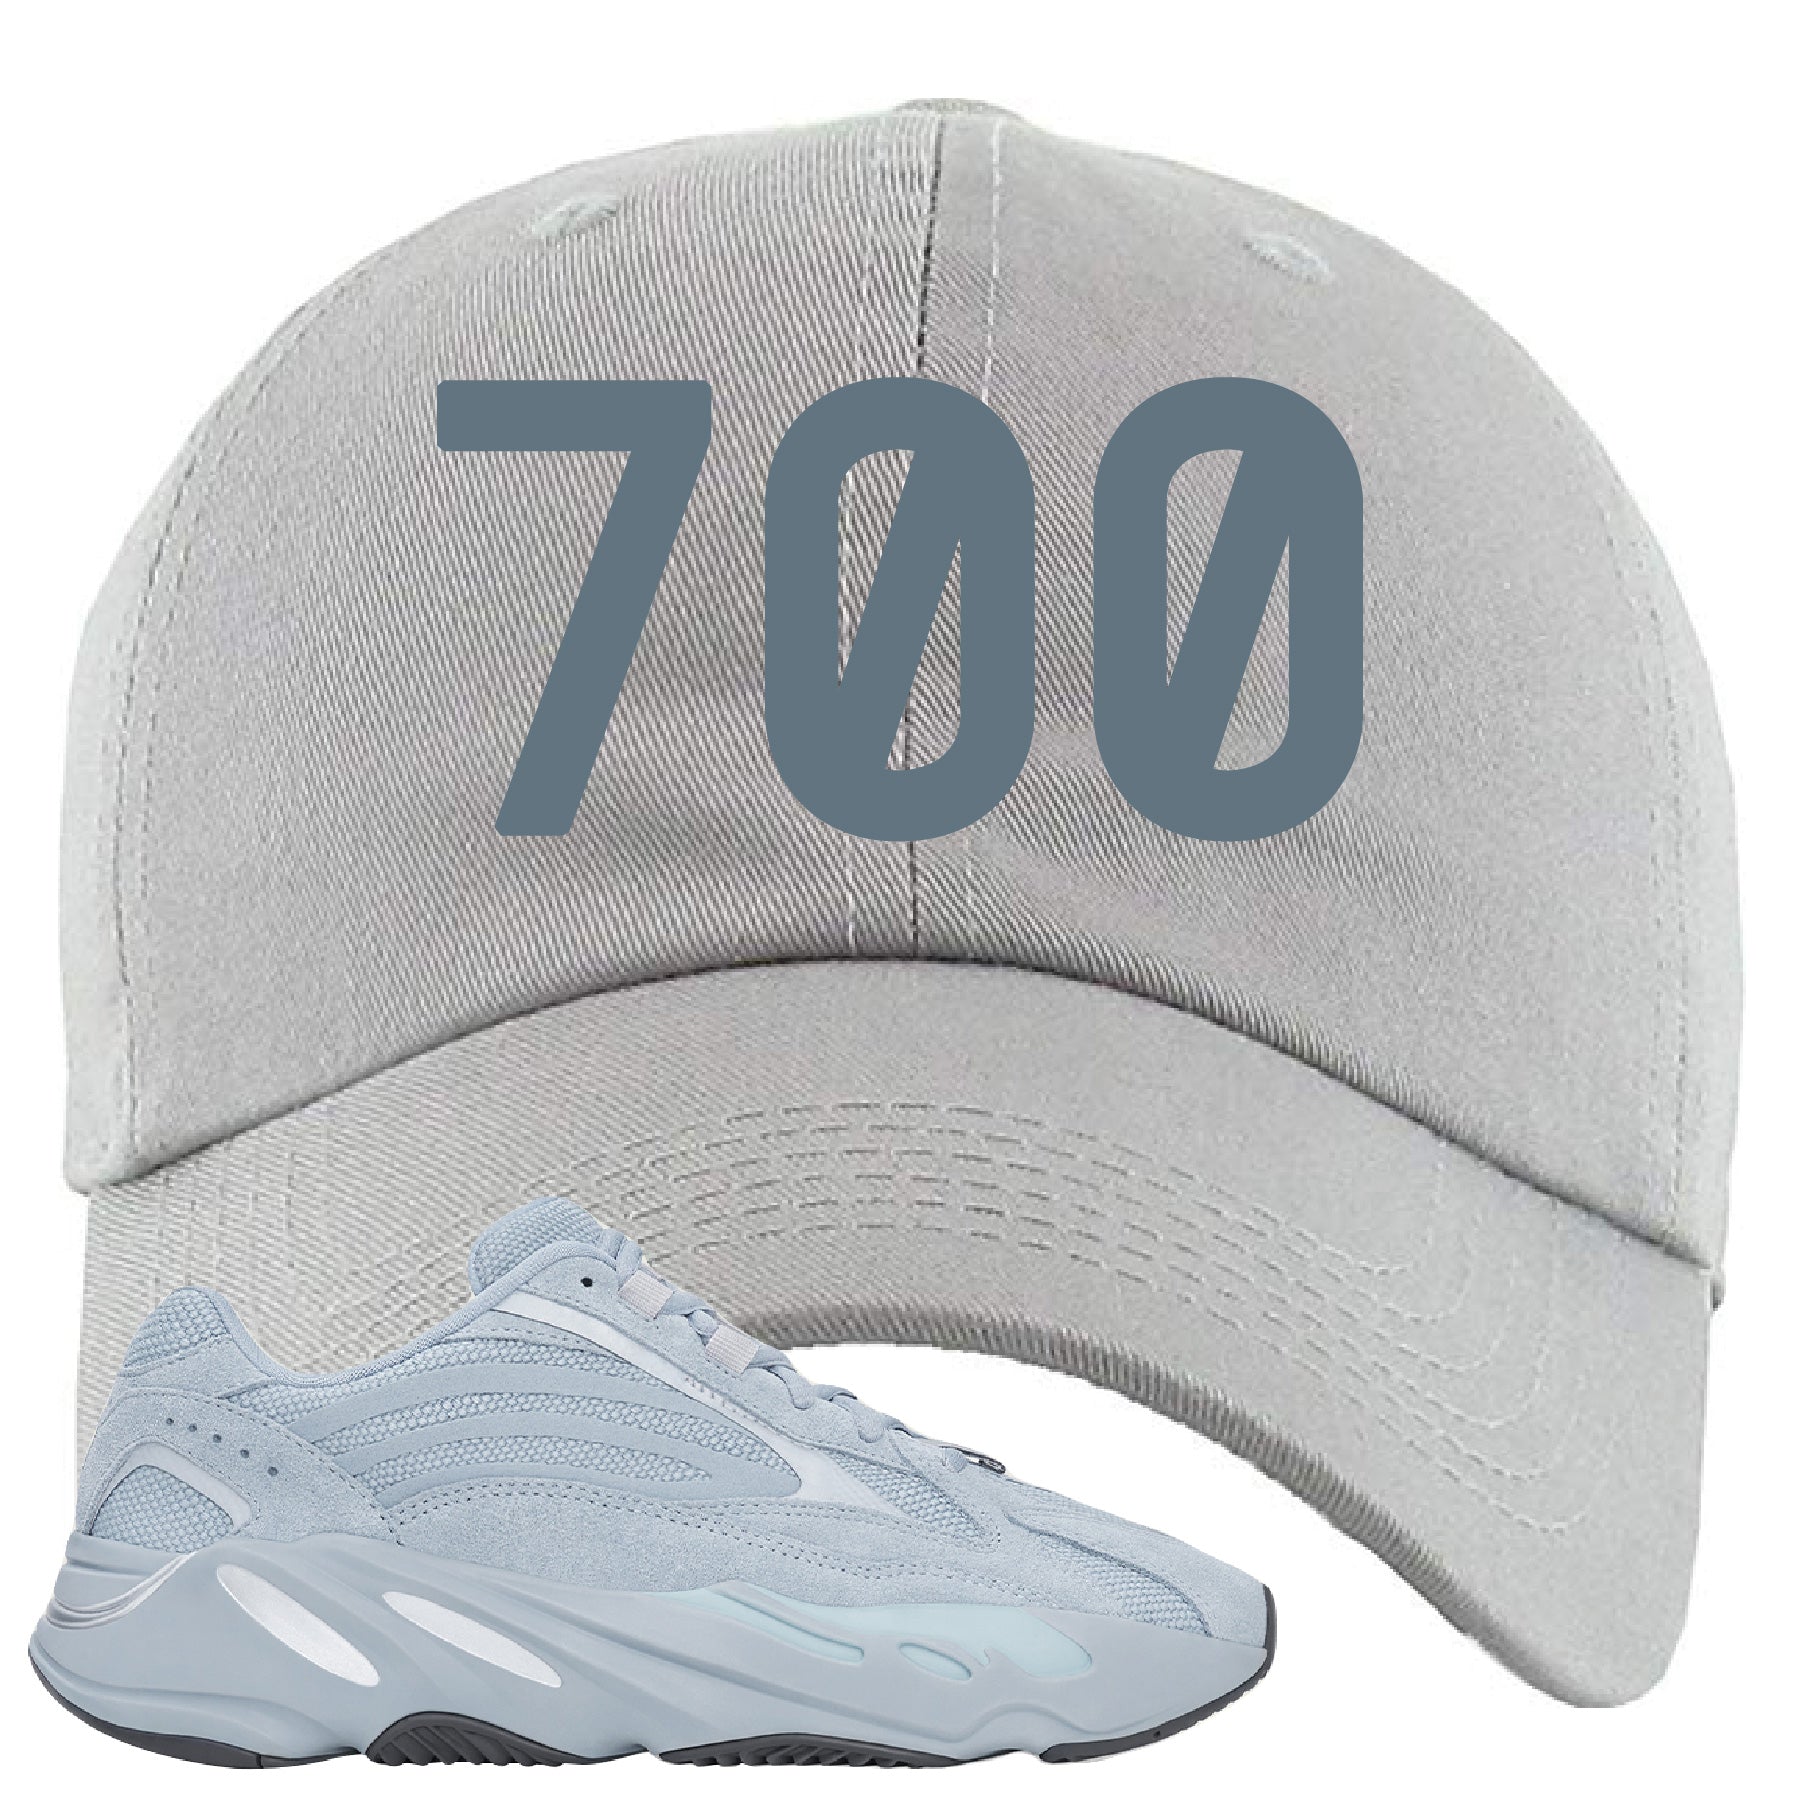 yeezy gray 700